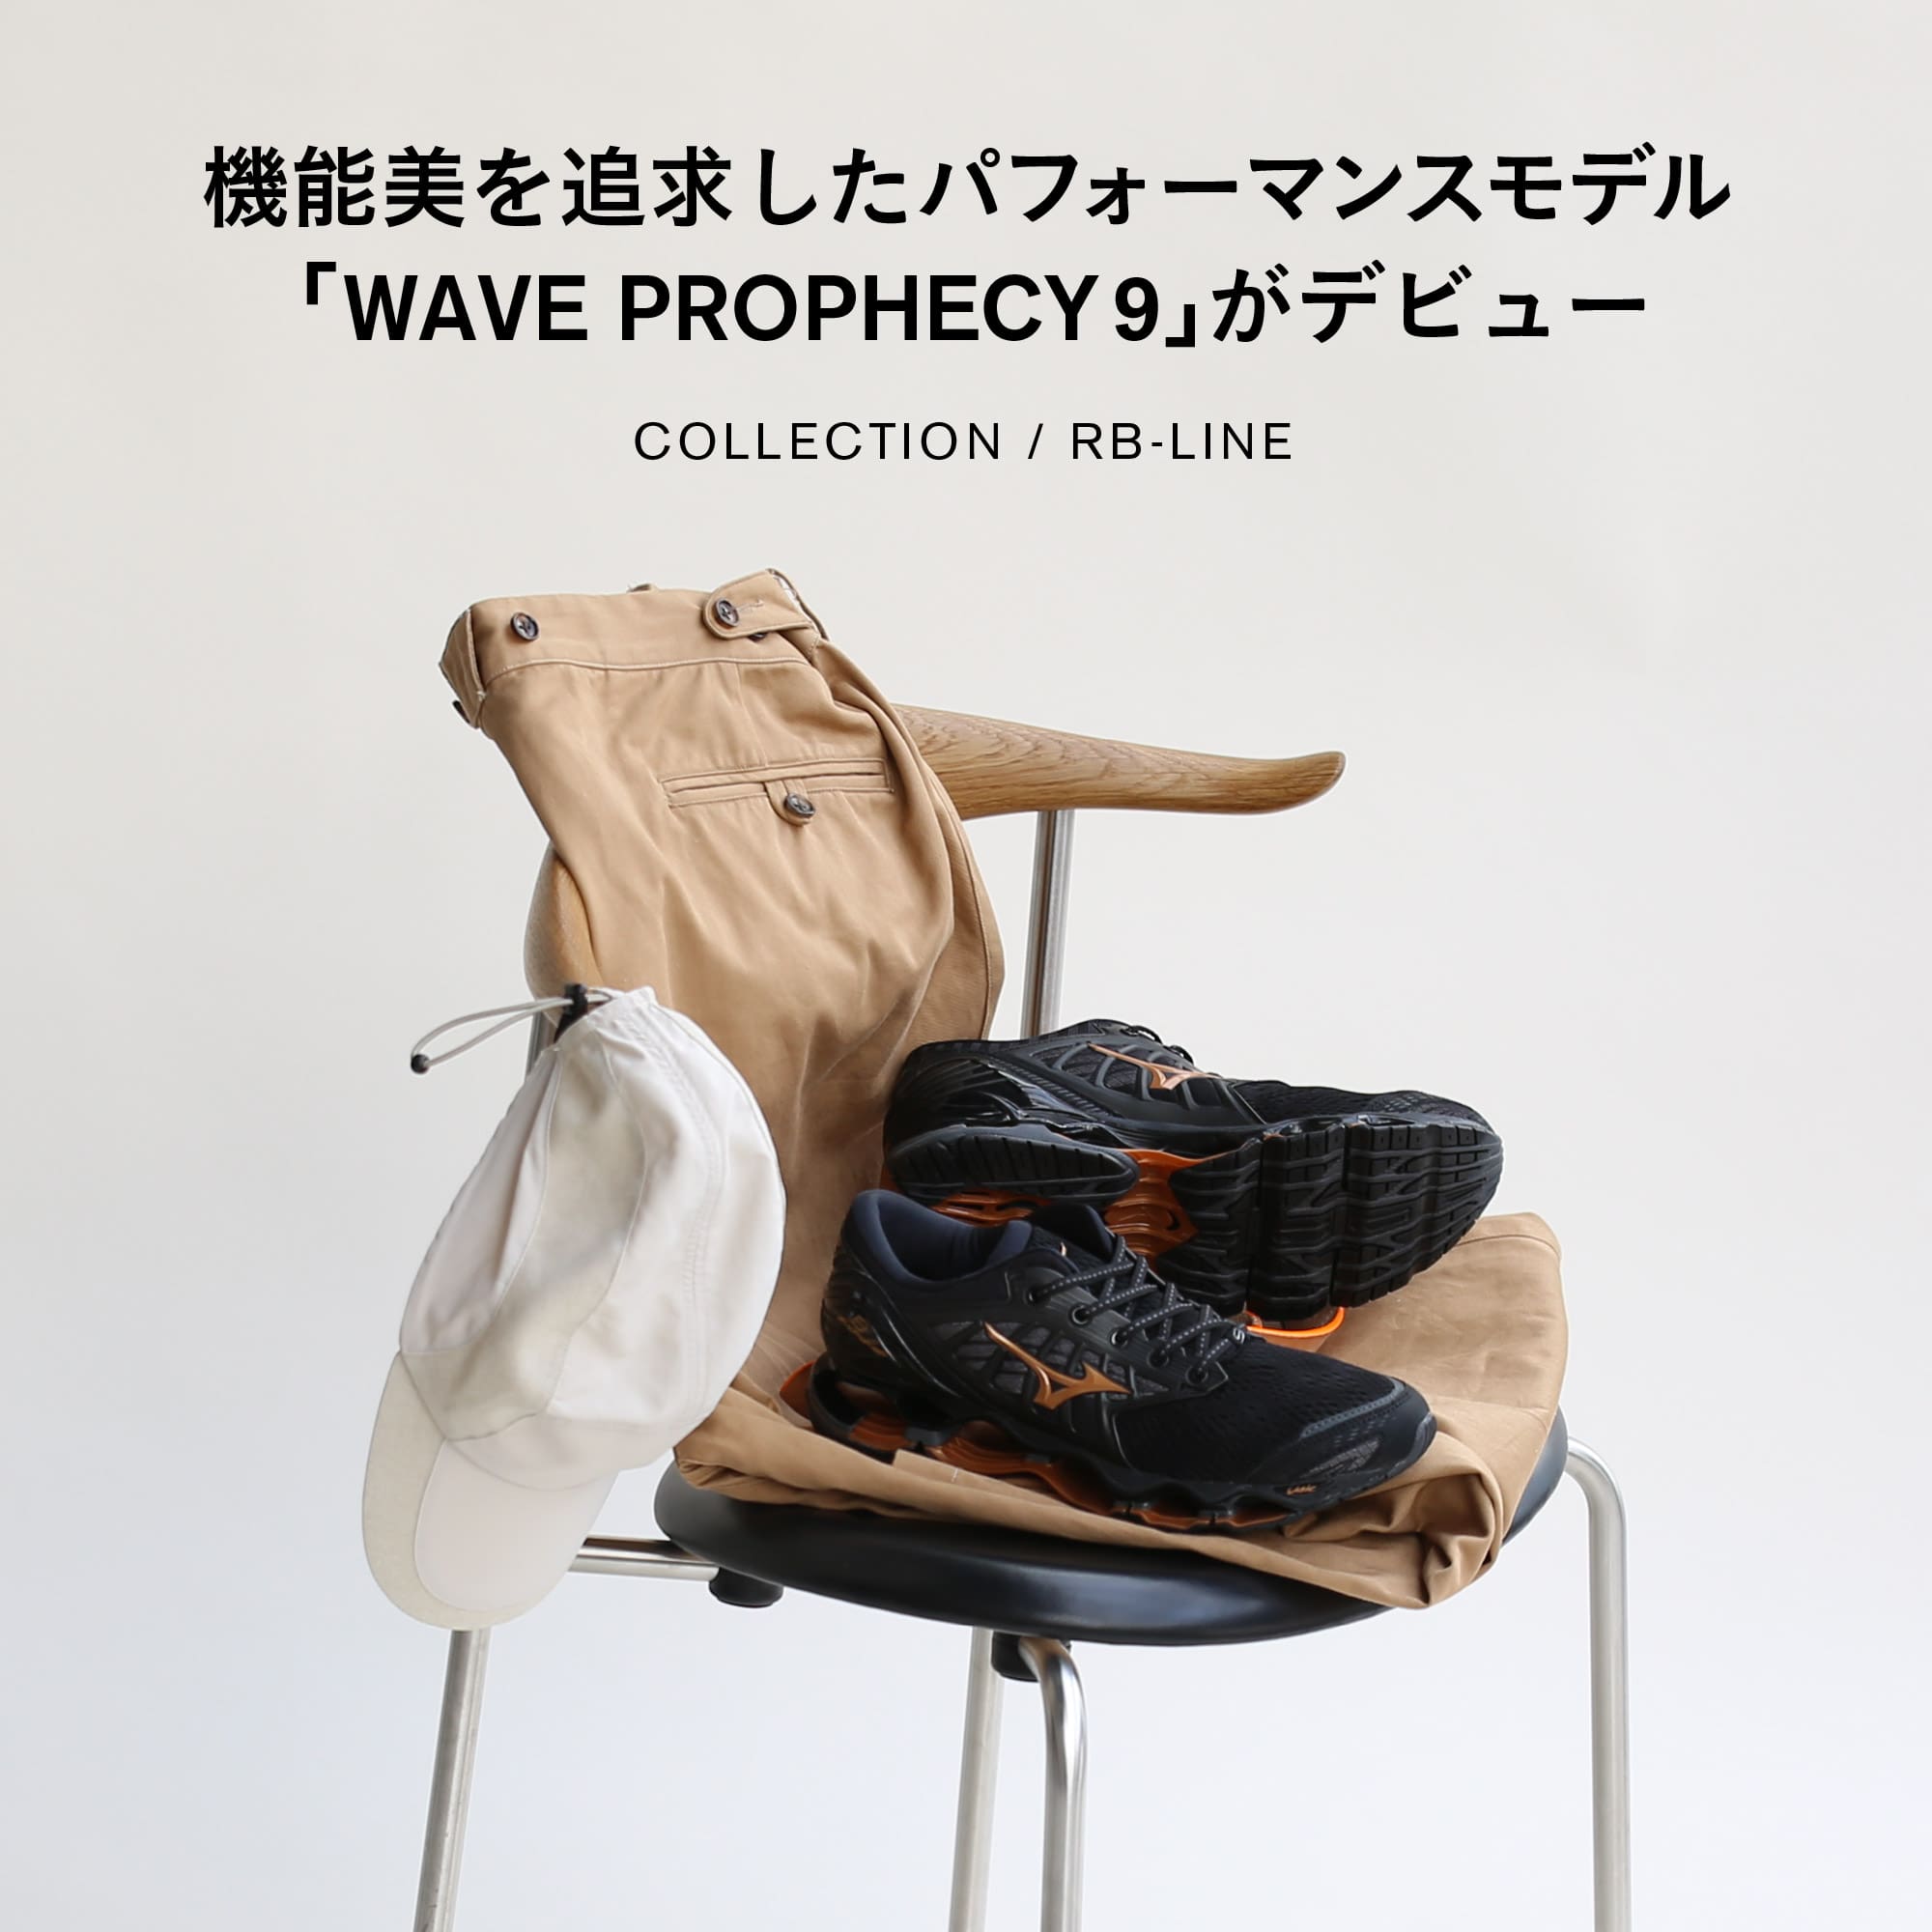 機能美を追求したパフォーマンスモデル「WAVE PROPHECY 9」がデビュー